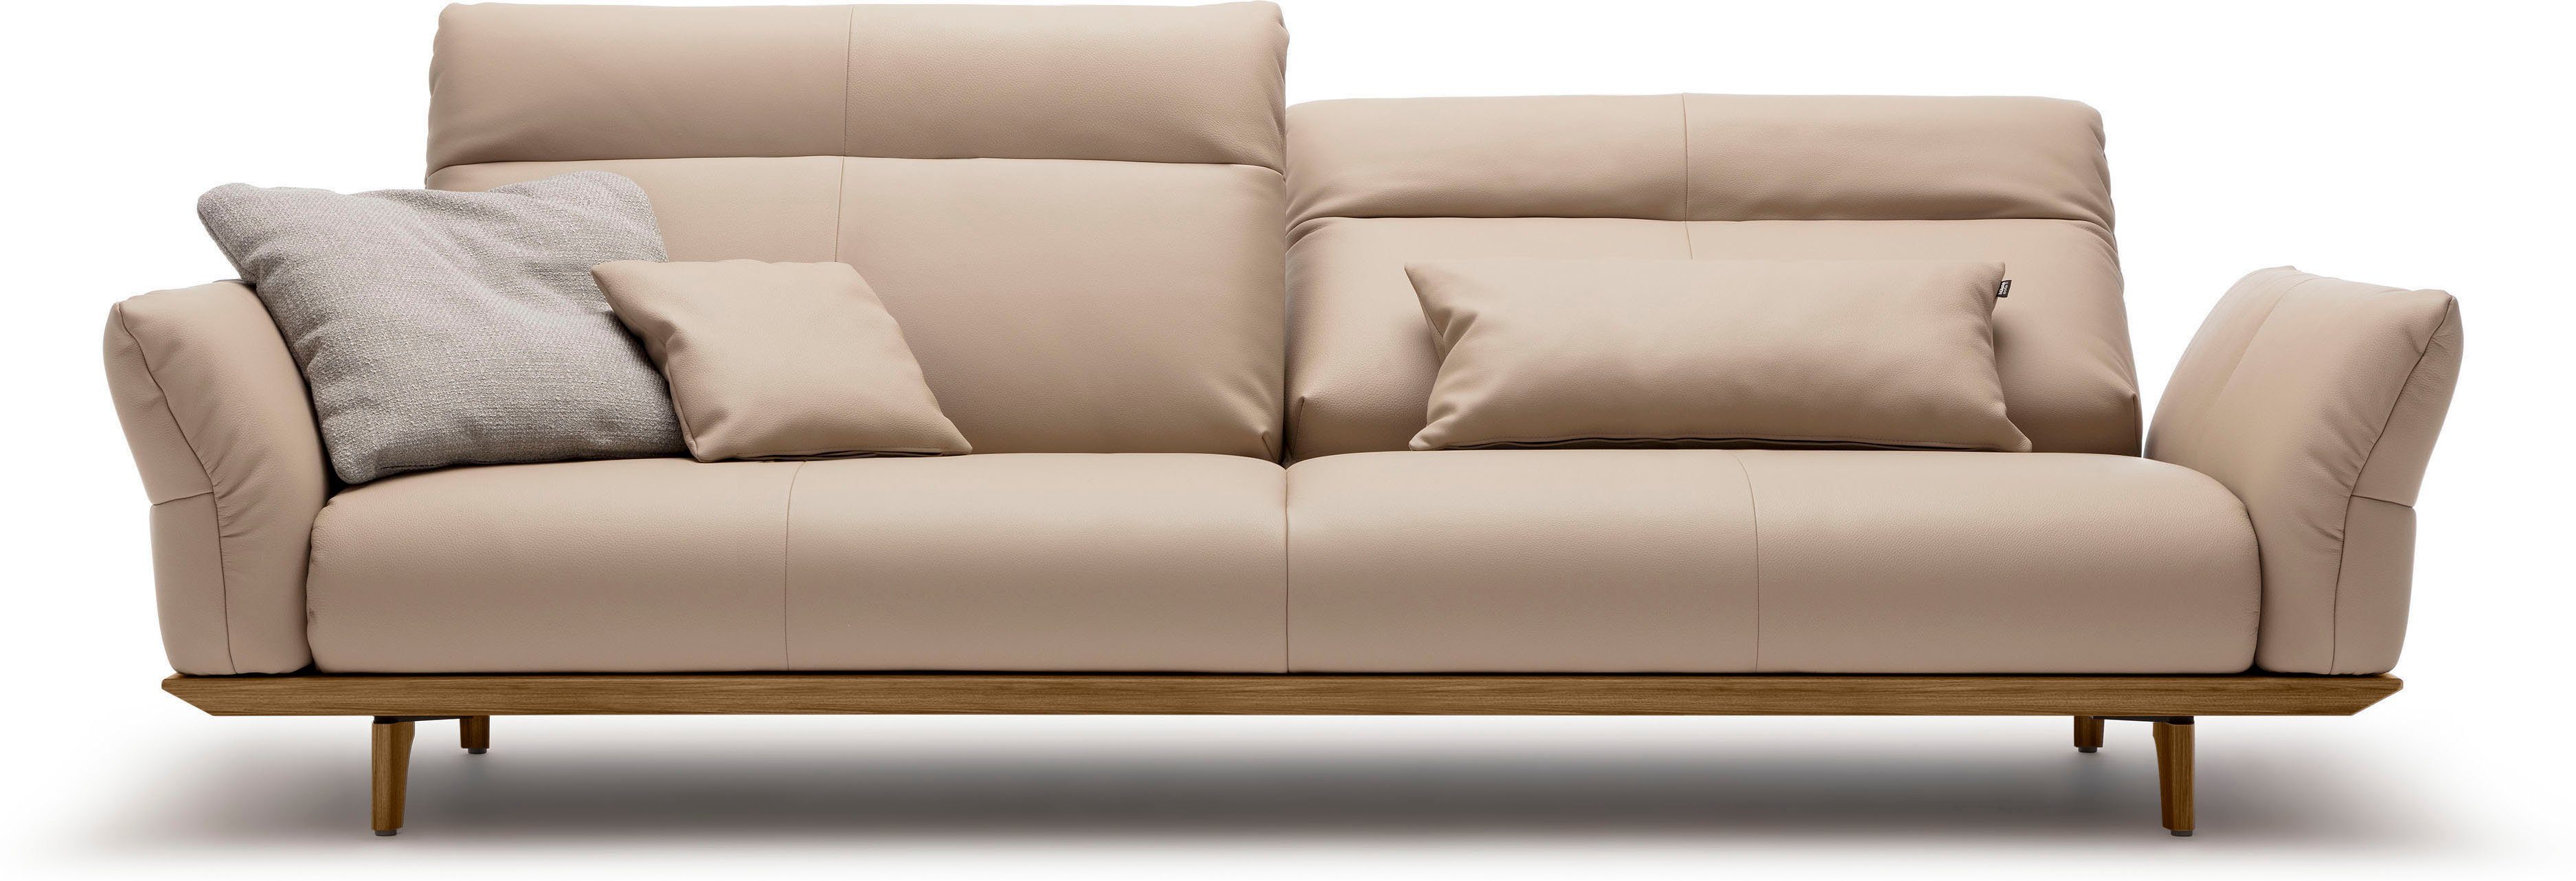 Nussbaum, 248 sofa Füße hülsta cm 4-Sitzer Sockel Breite hs.460, in Nussbaum,